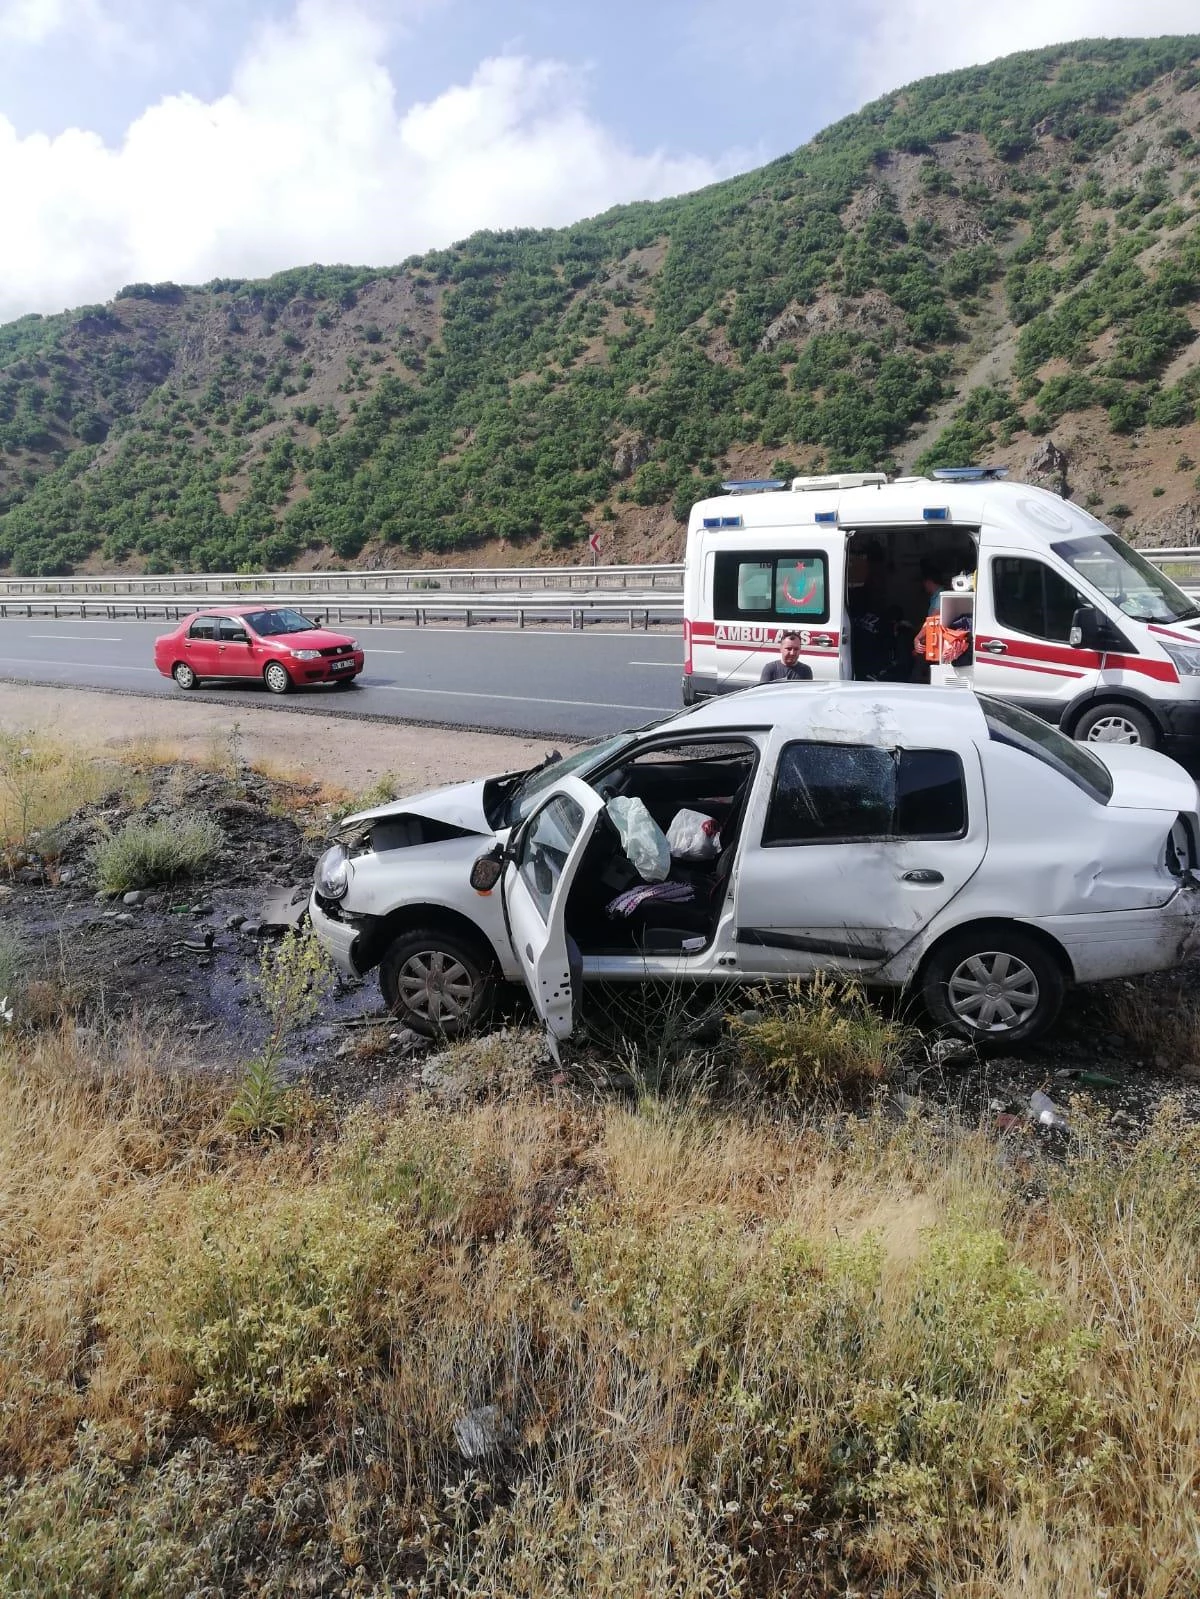 Erzincan'da şarampole devrilen otomobildeki anne ve baba ile 2 çocukları yaralandı